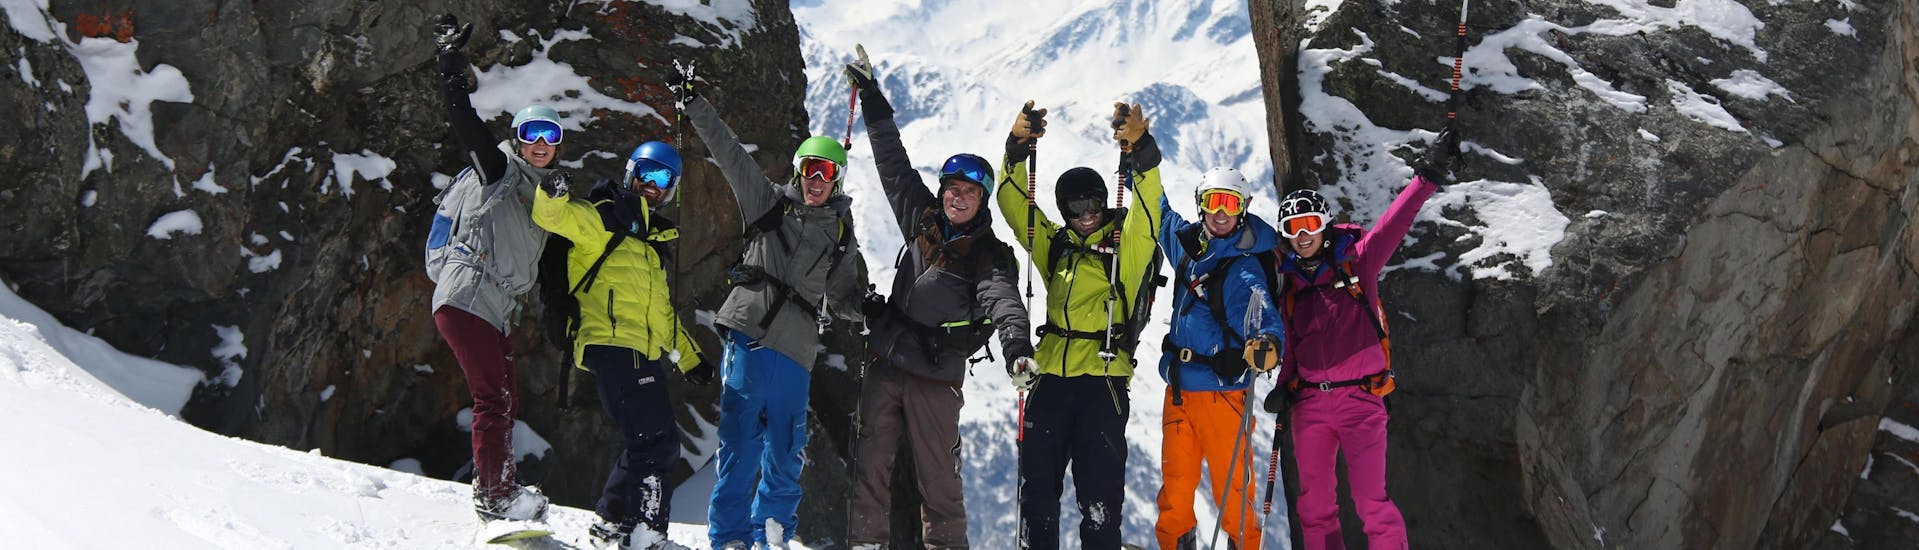 Un gruppo di amici scatta alcune foto durante le lezioni di sci per adulti - tutti i livelli organizzate dalla scuola di sci Prosneige Val d'Isère.